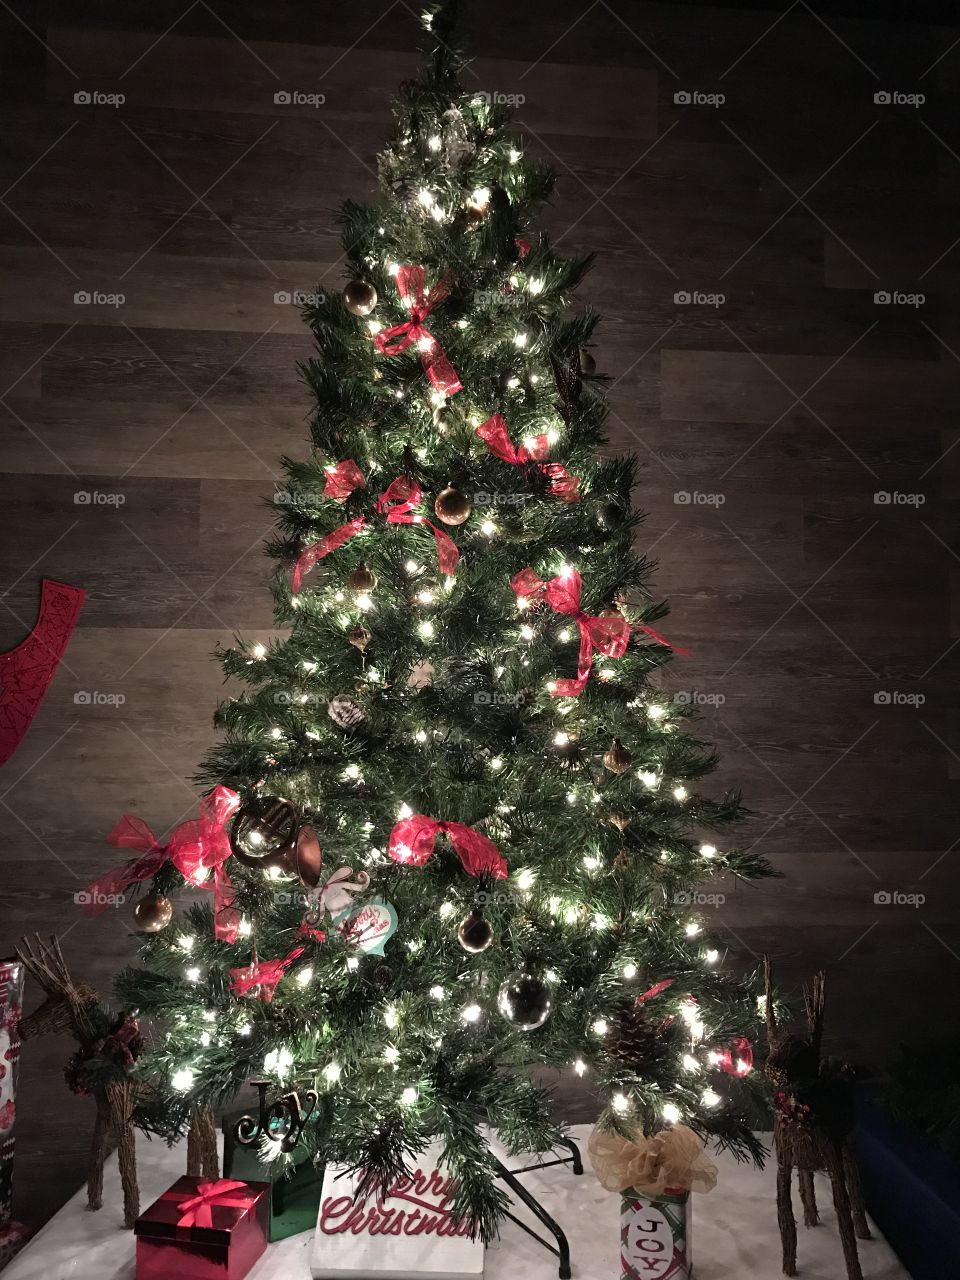 Gorgeous Christmas tree